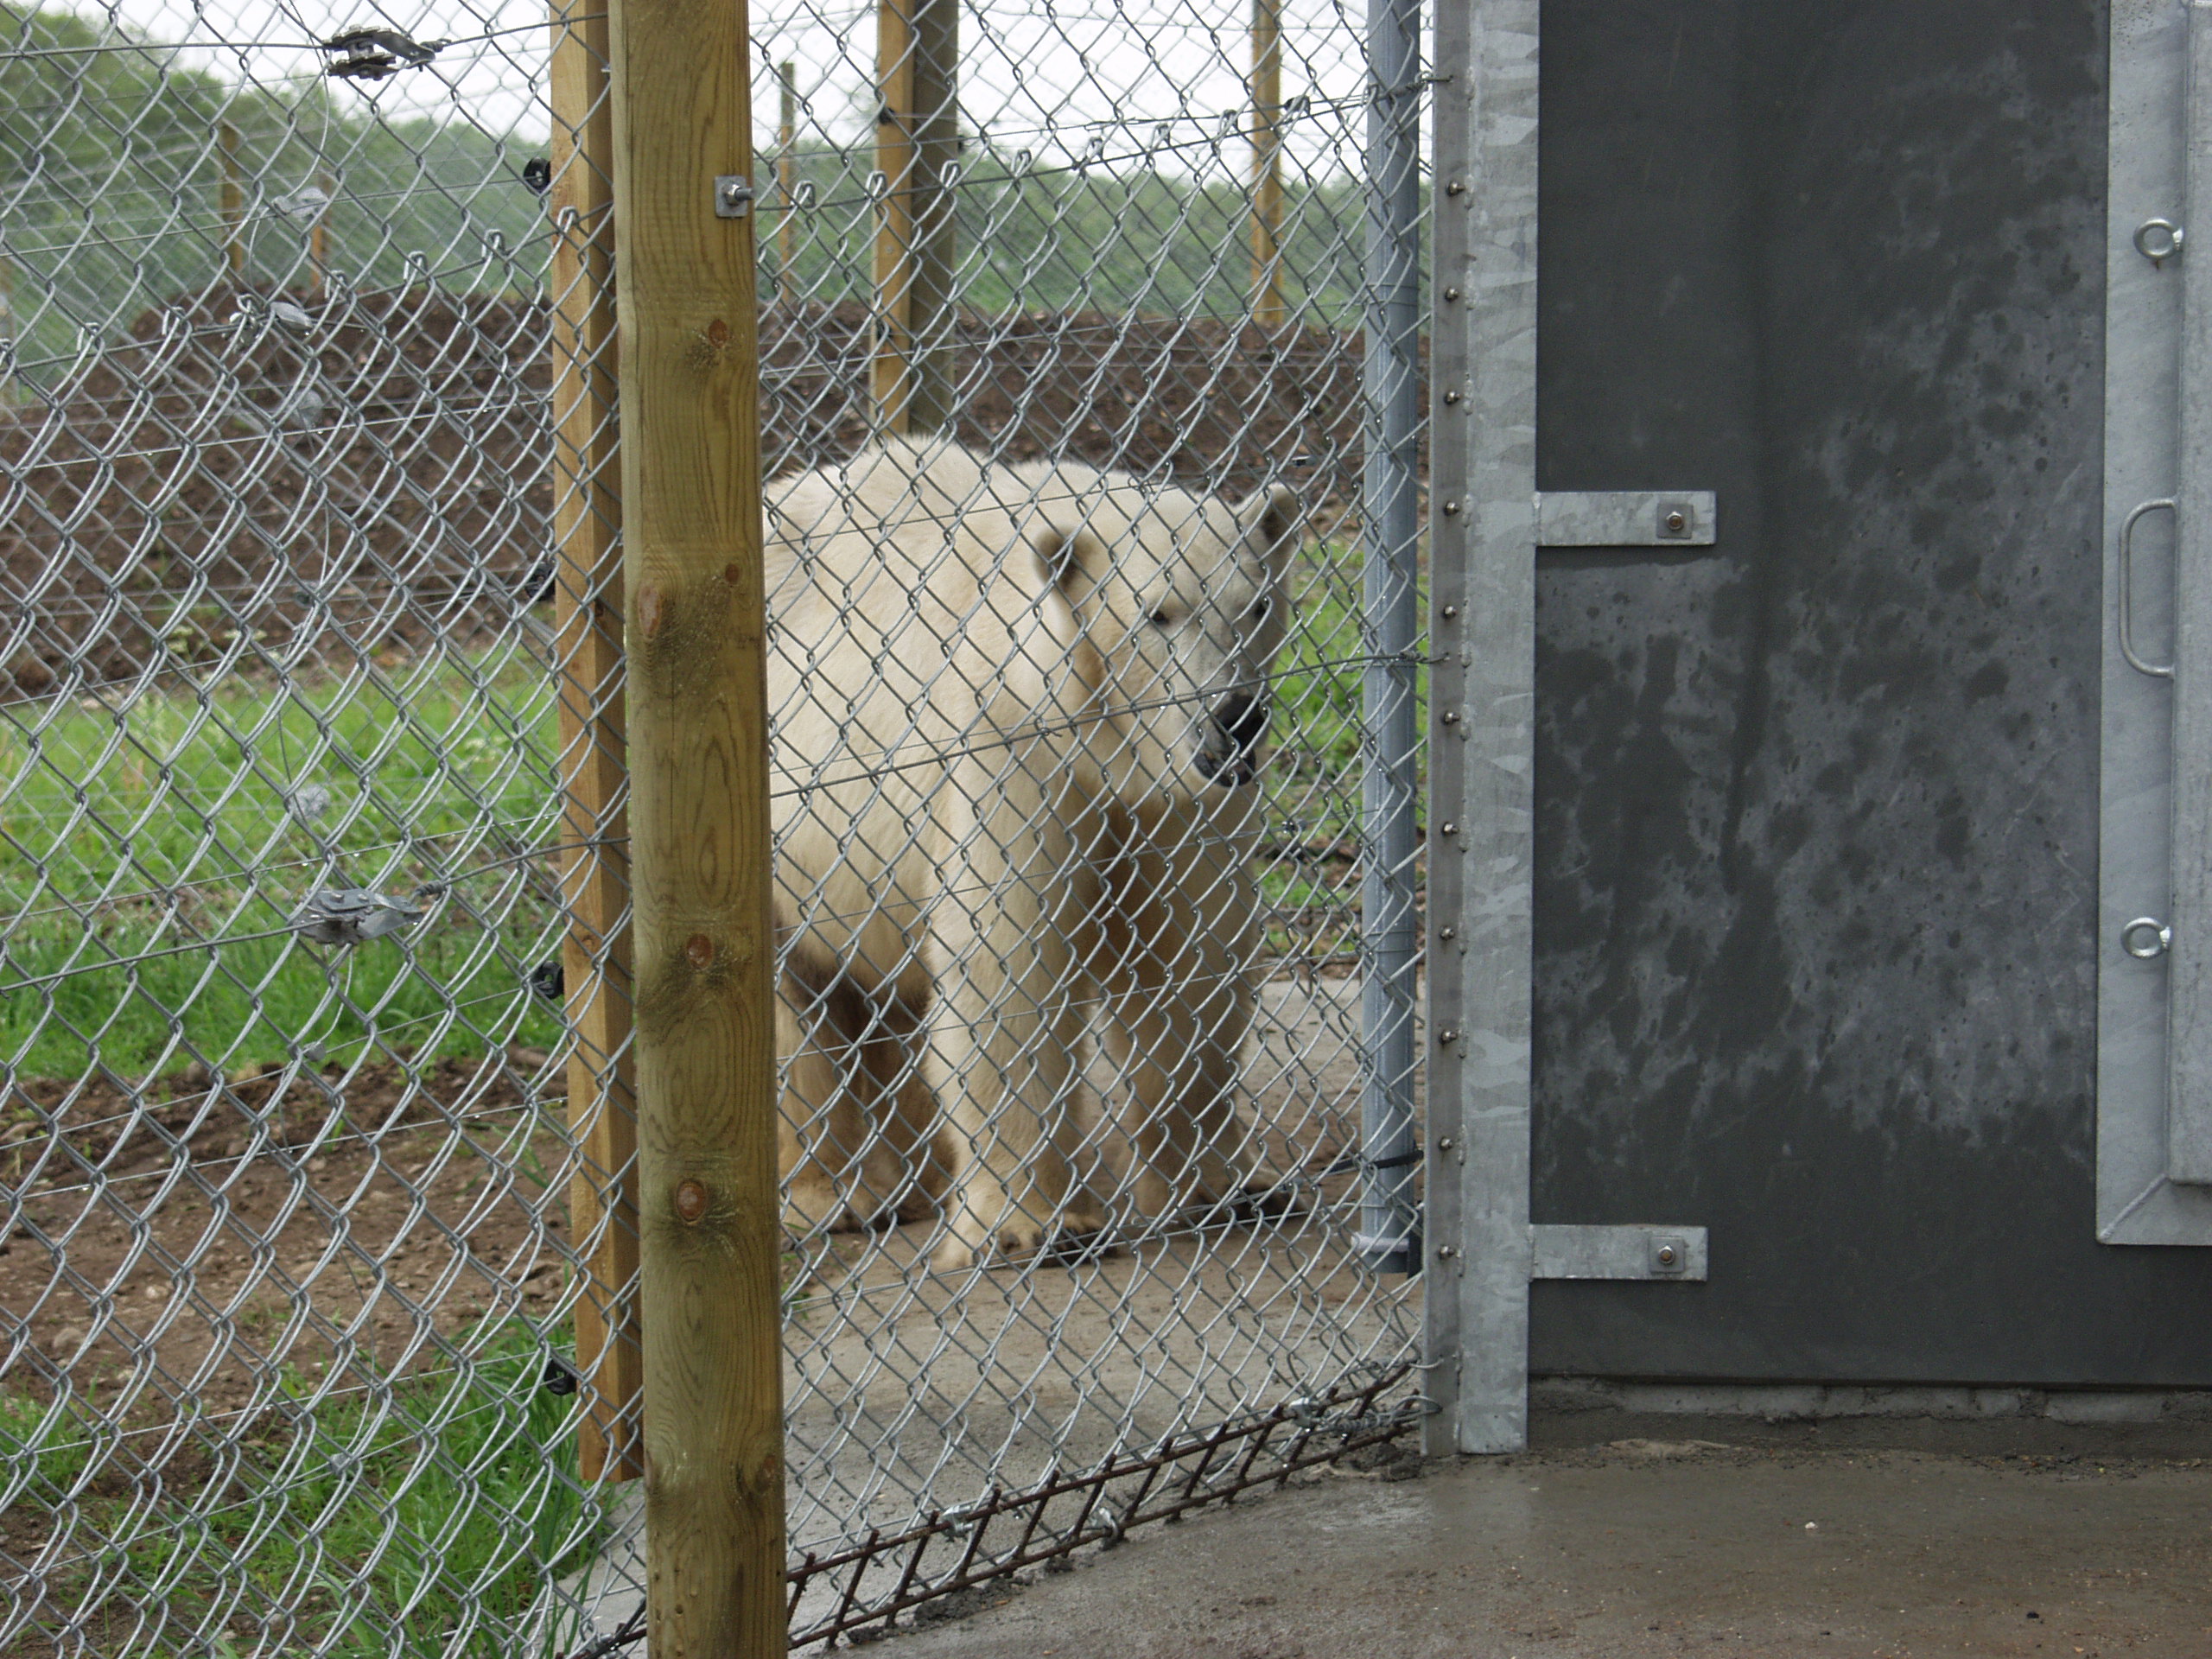 En isbjörn går säkert omkring i sin inhägnad, som består av både ett elstängsel och ett nätstängsel.